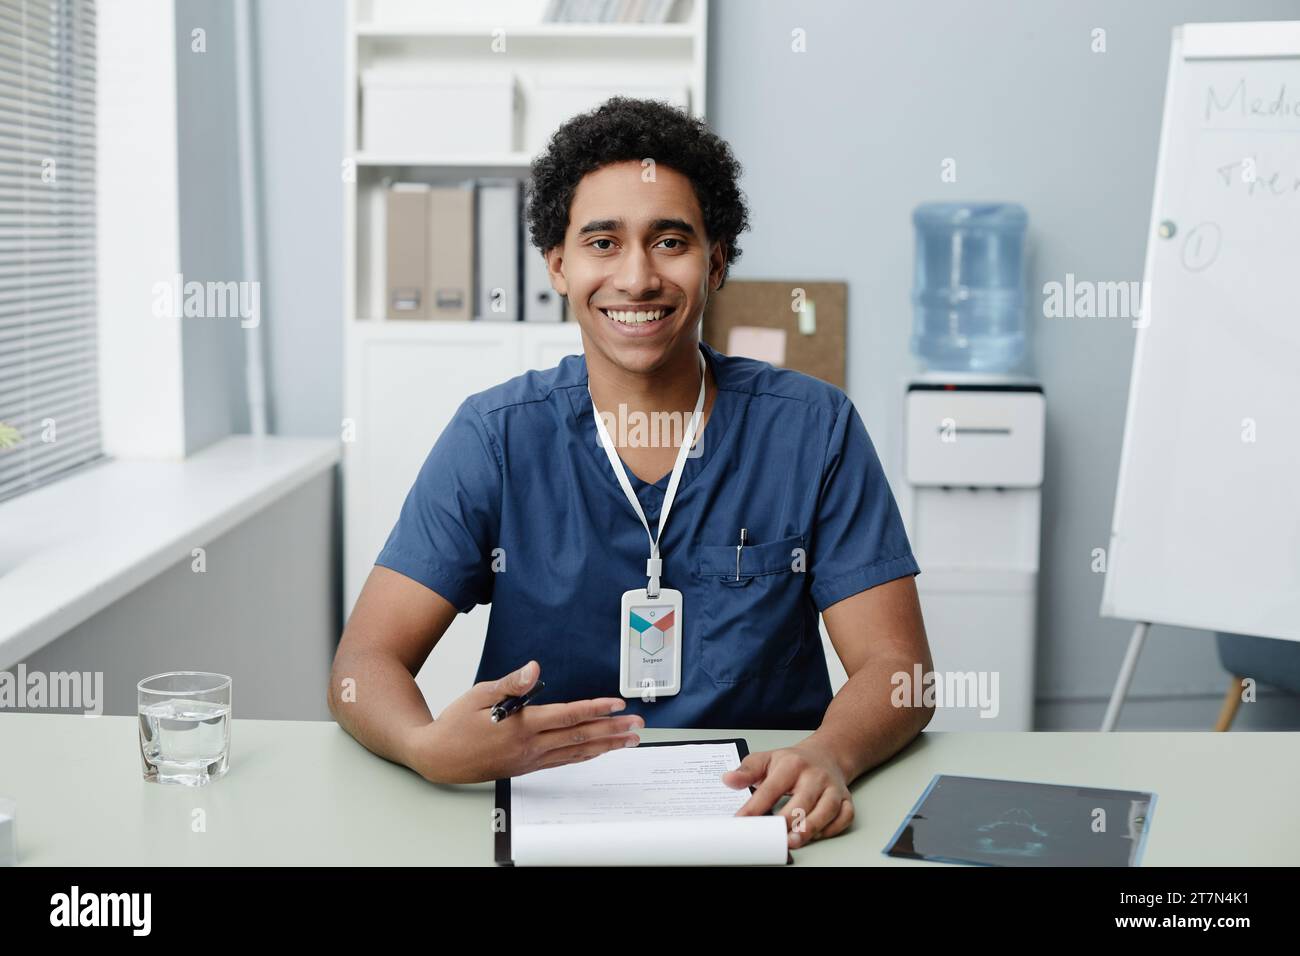 Ritratto di un giovane uomo del Medio Oriente sorridente come medico che parla tramite video chat in clinica, spazio copia Foto Stock